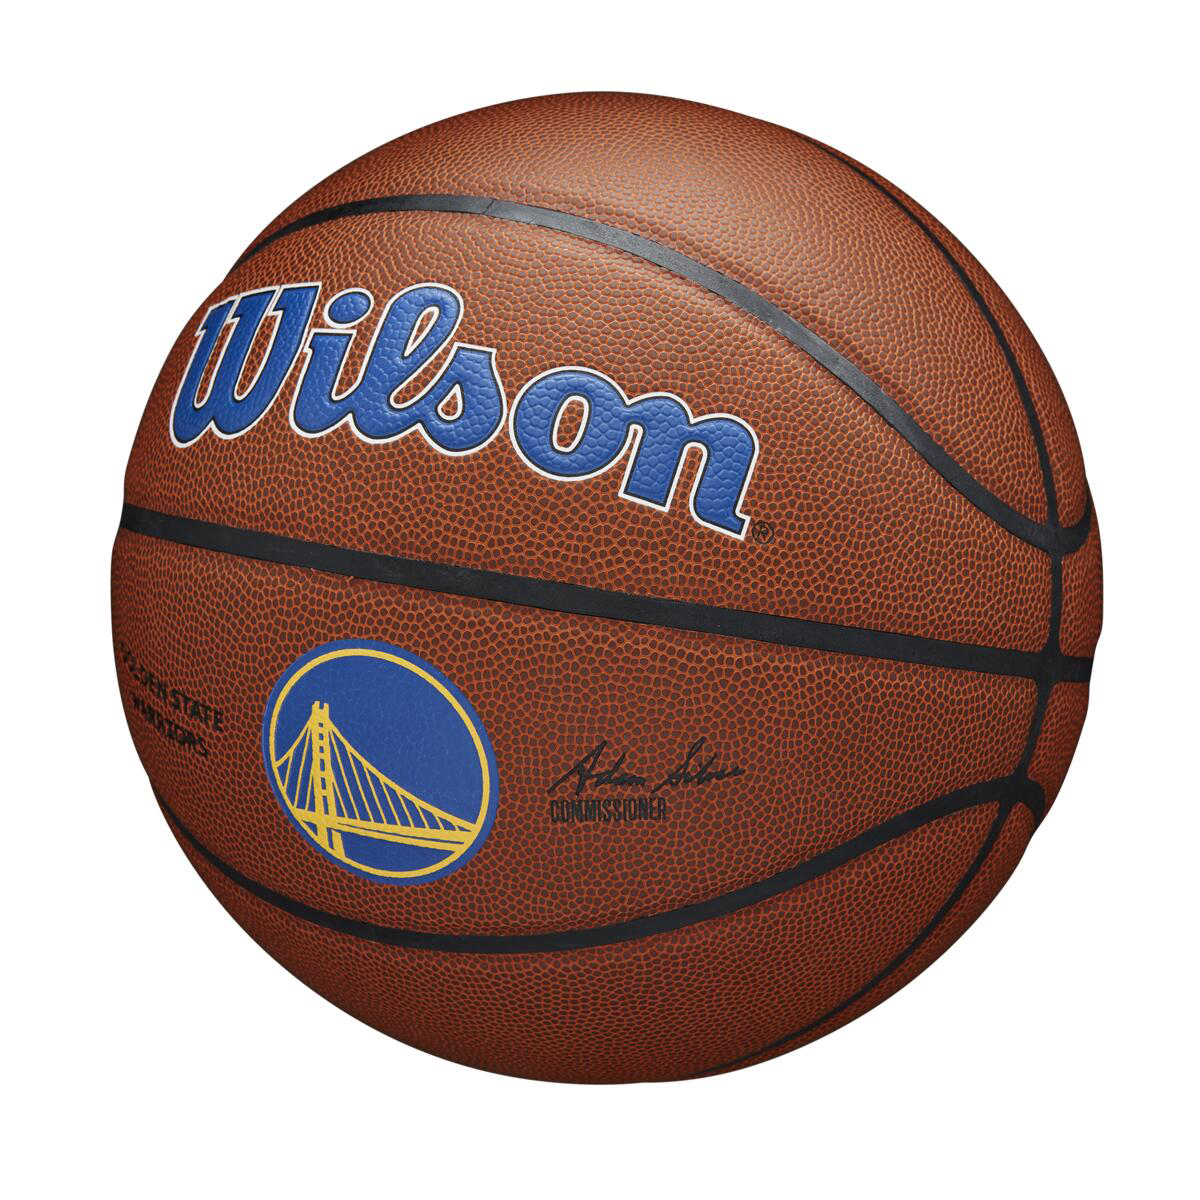 WILSON NBA COMPOSITE WARRIORS 7 BROWN